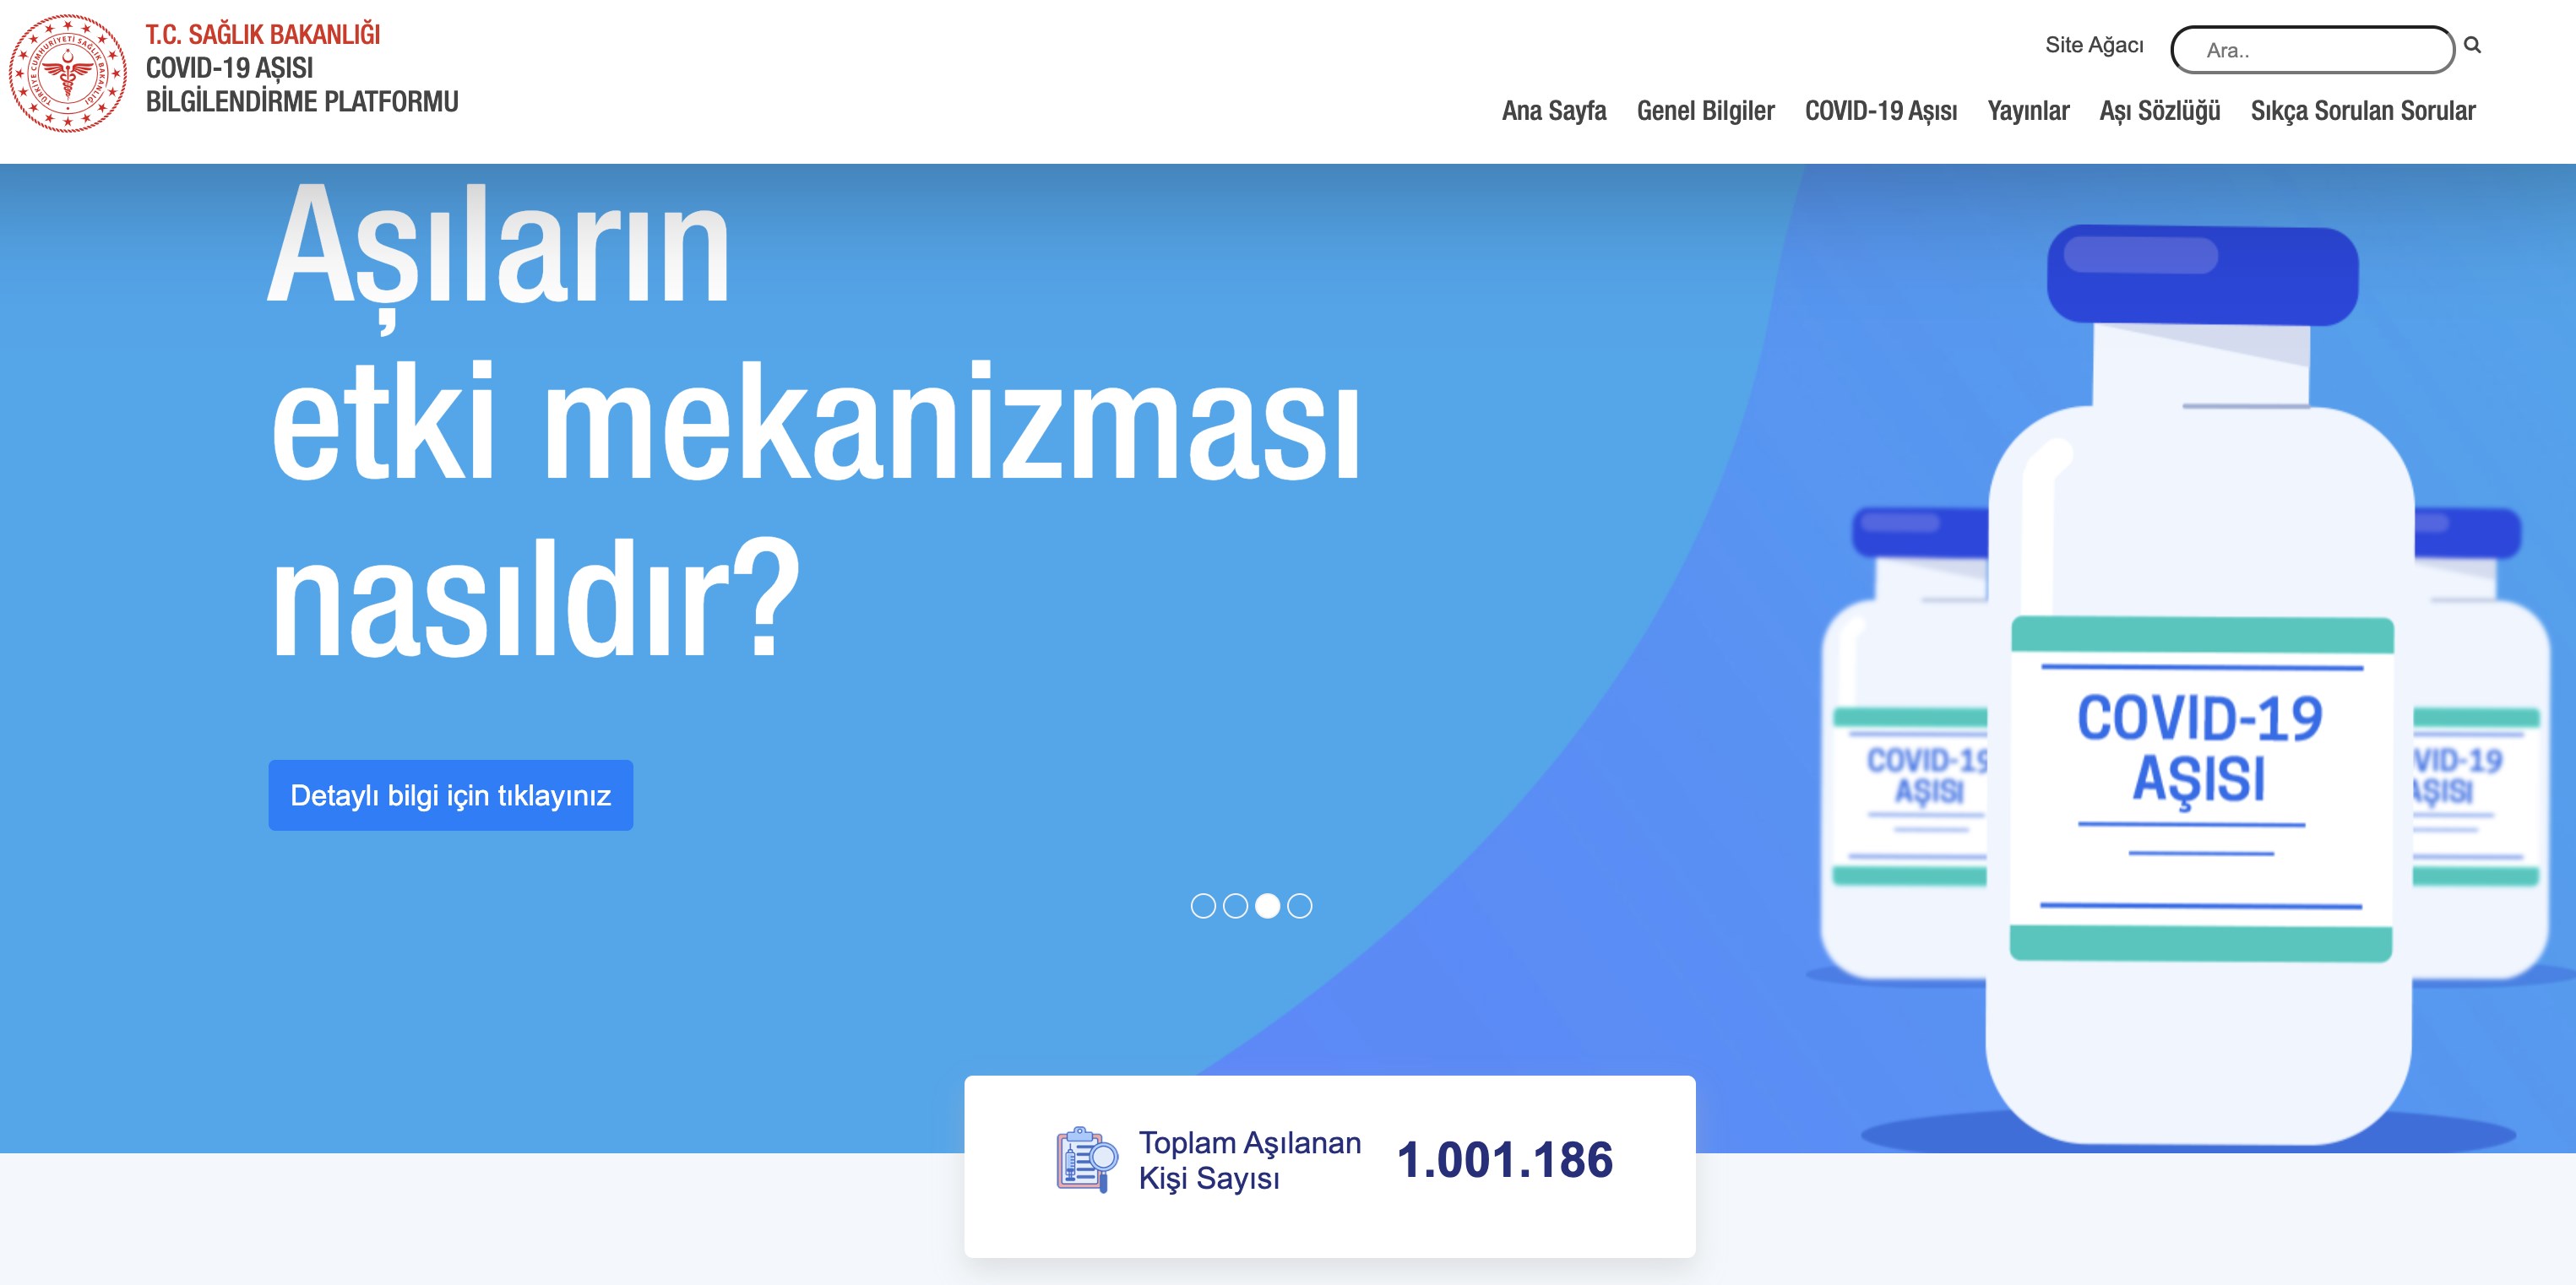 Türkiye'de toplam 1 milyon doz aşı uygulandı